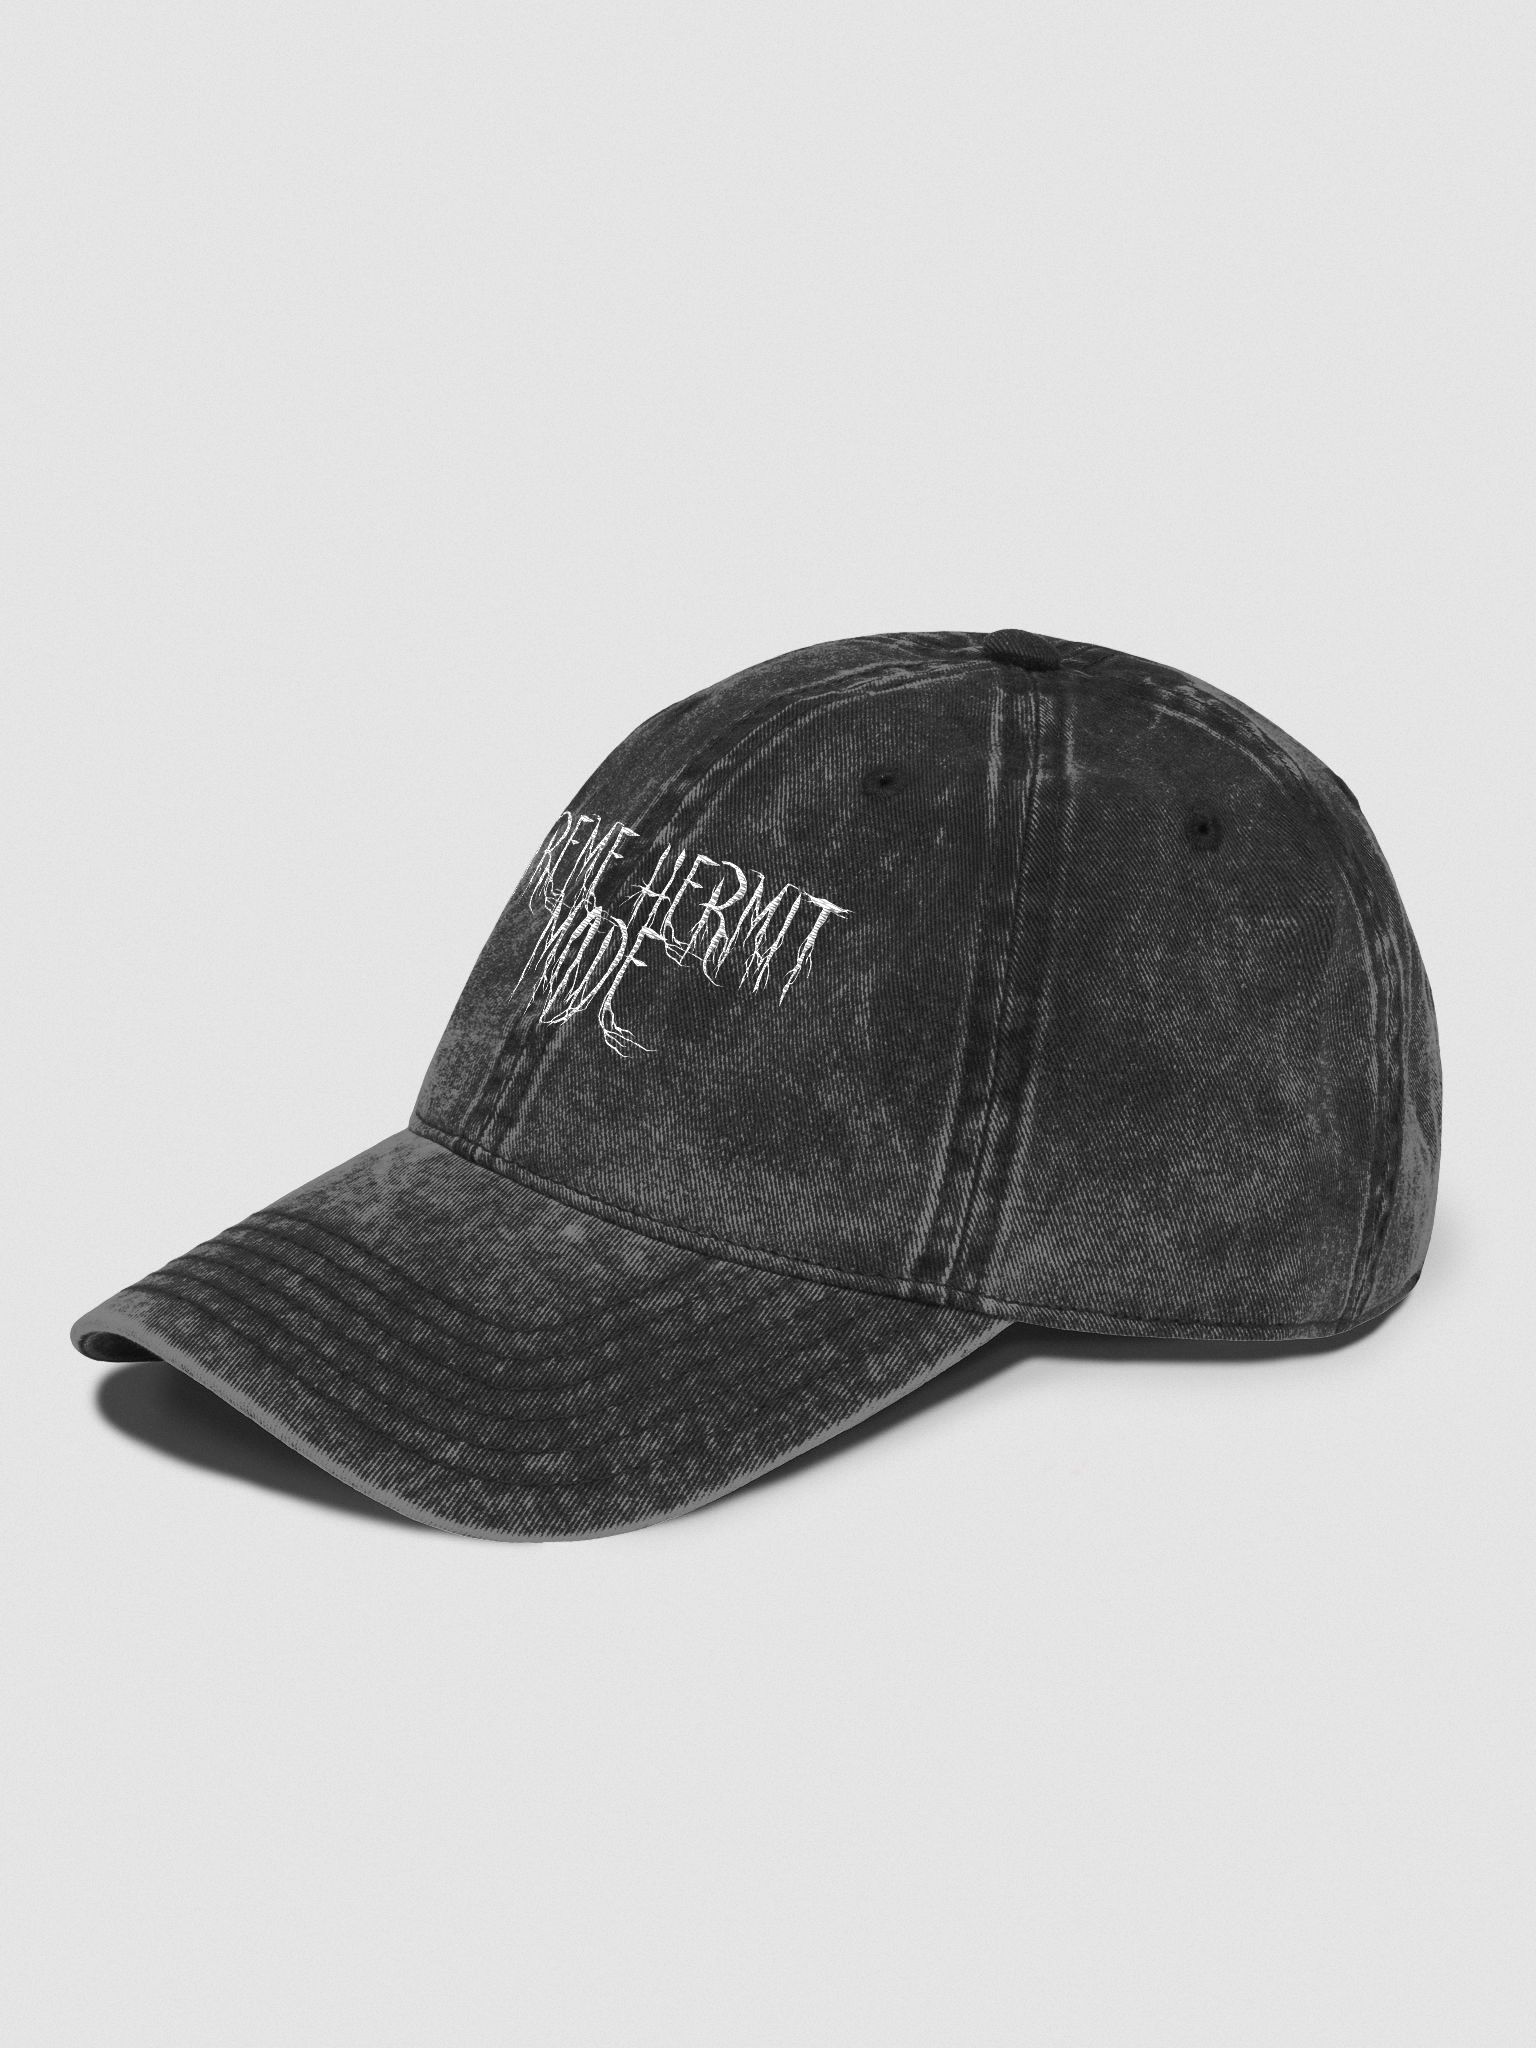 Hermit cap! | MorbidHistory